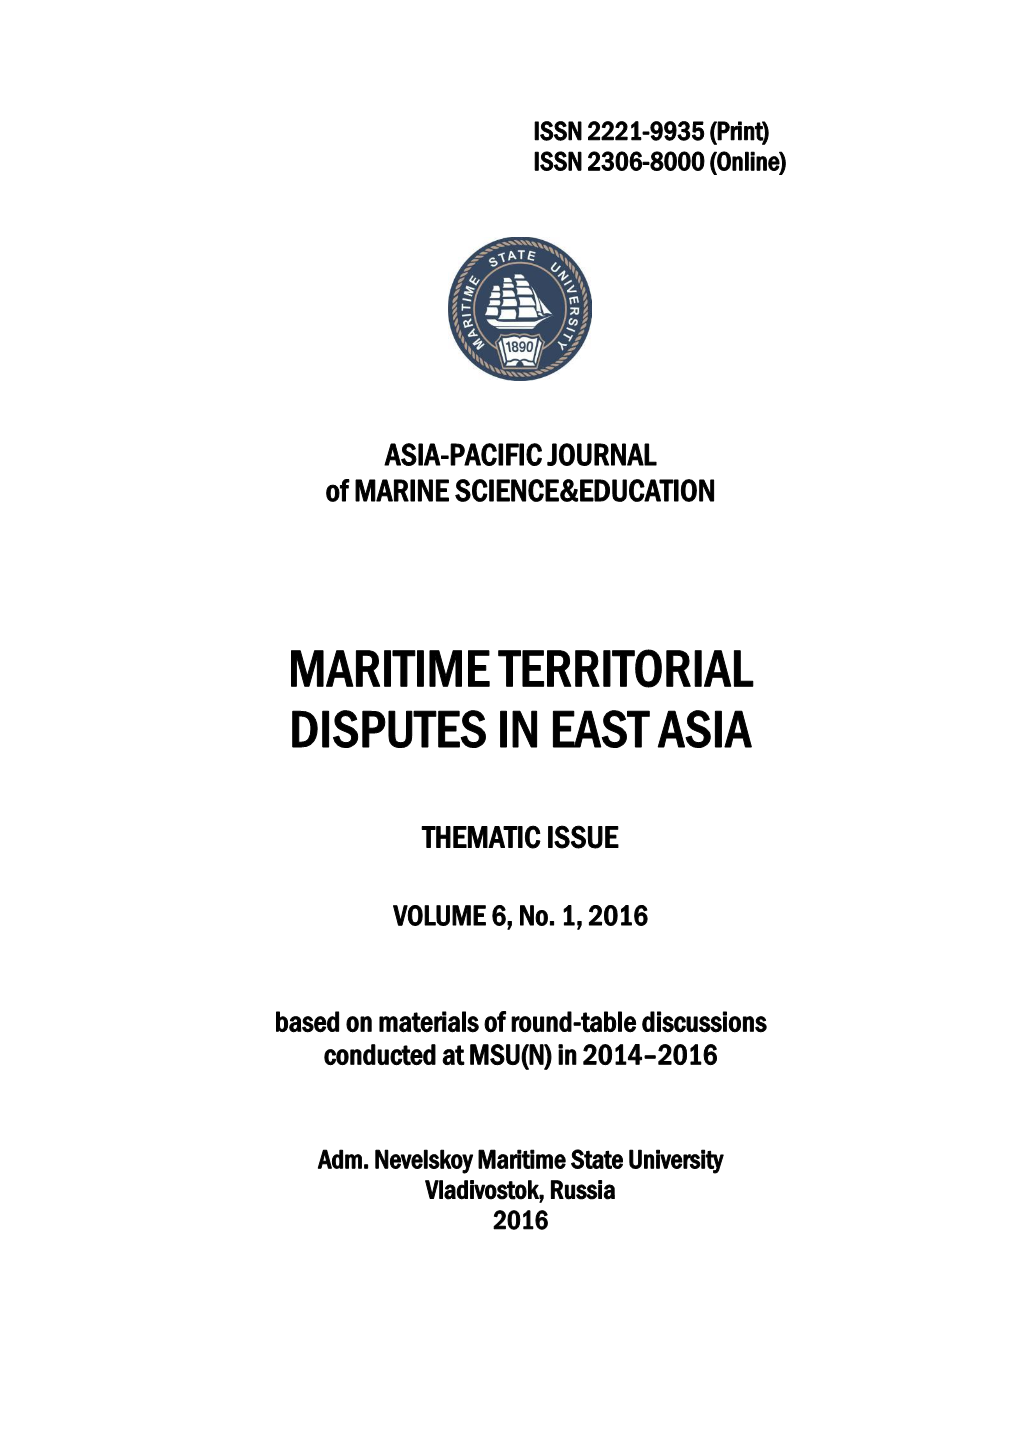 Maritime Territorial Disputes in East Asia